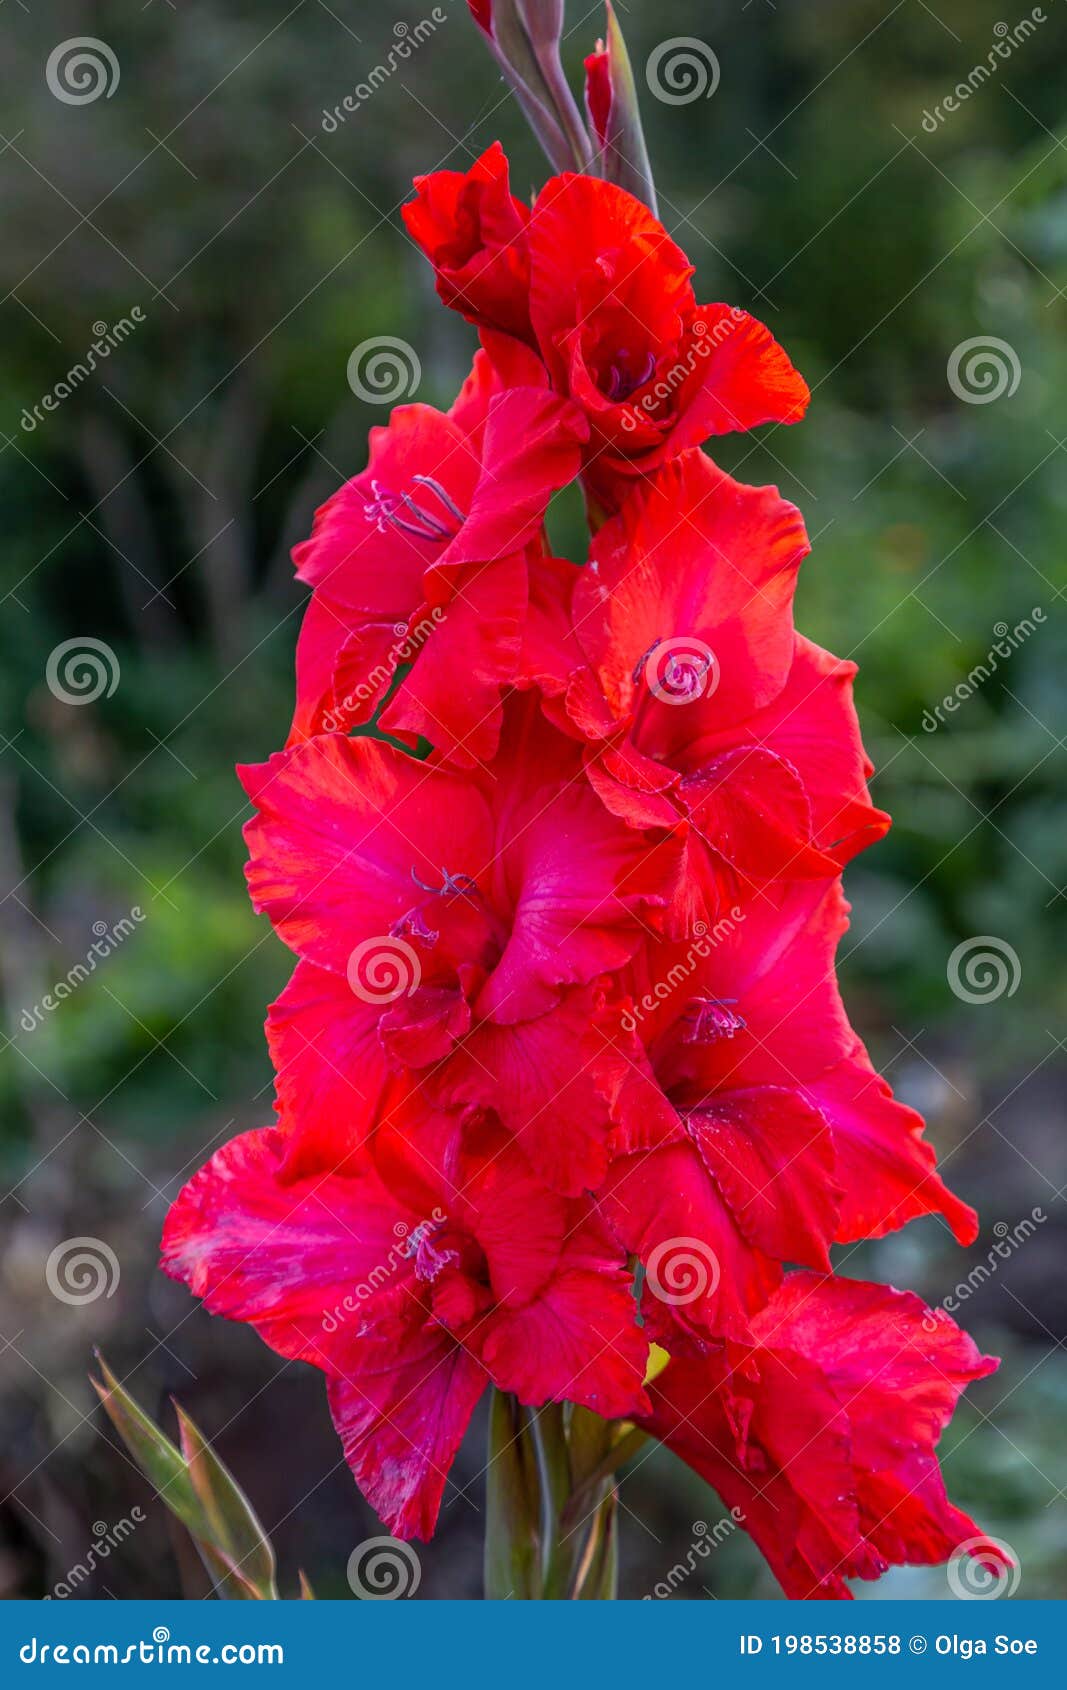 red flower gladiolos closeup in garden